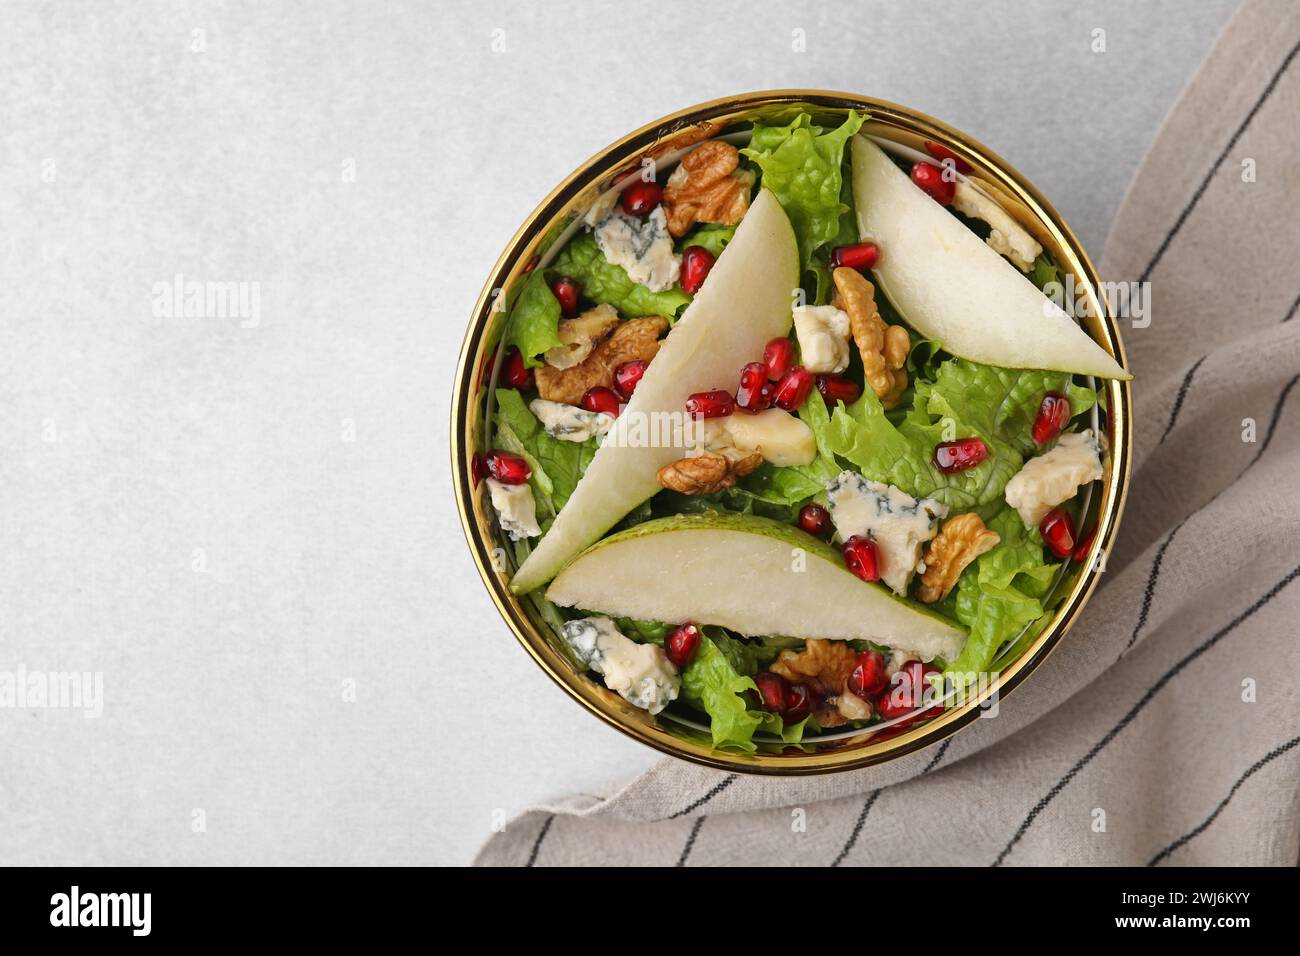 Délicieuse salade de poires dans un bol sur une table lumineuse, vue de dessus. Espace pour le texte Banque D'Images